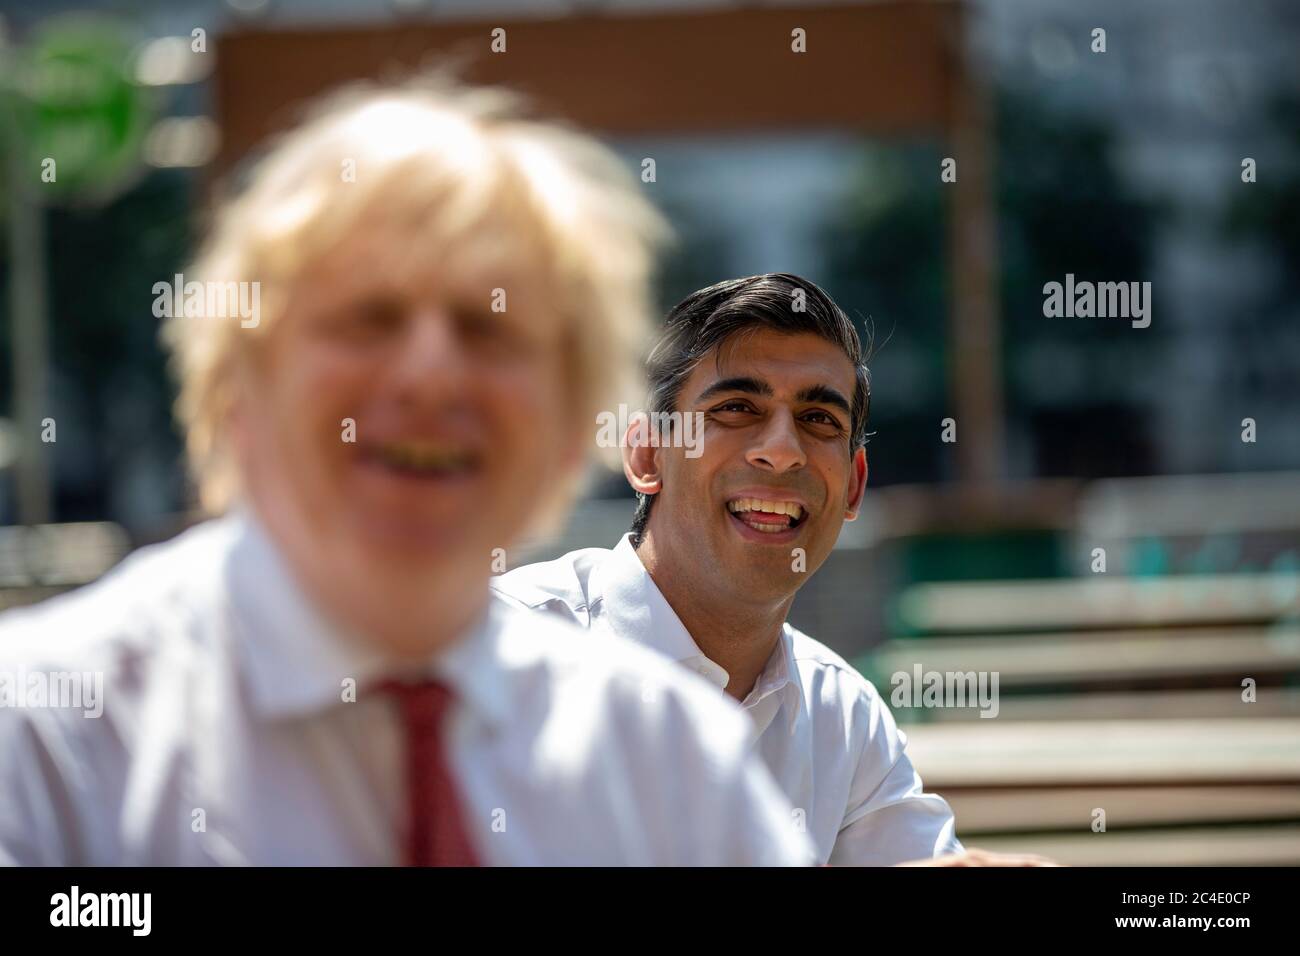 Le Premier ministre Boris Johnson (à gauche) et le chancelier de l'Échiquier Rishi Sunak (à droite), lors d'une visite au restaurant Pizza Pilgrims dans l'est de Londres pour voir comment ils sont prêts à rouvrir leur entreprise et à s'adapter pour suivre les directives COVID-Secure, Les restrictions de verrouillage du coronavirus sont levées en Angleterre. Banque D'Images